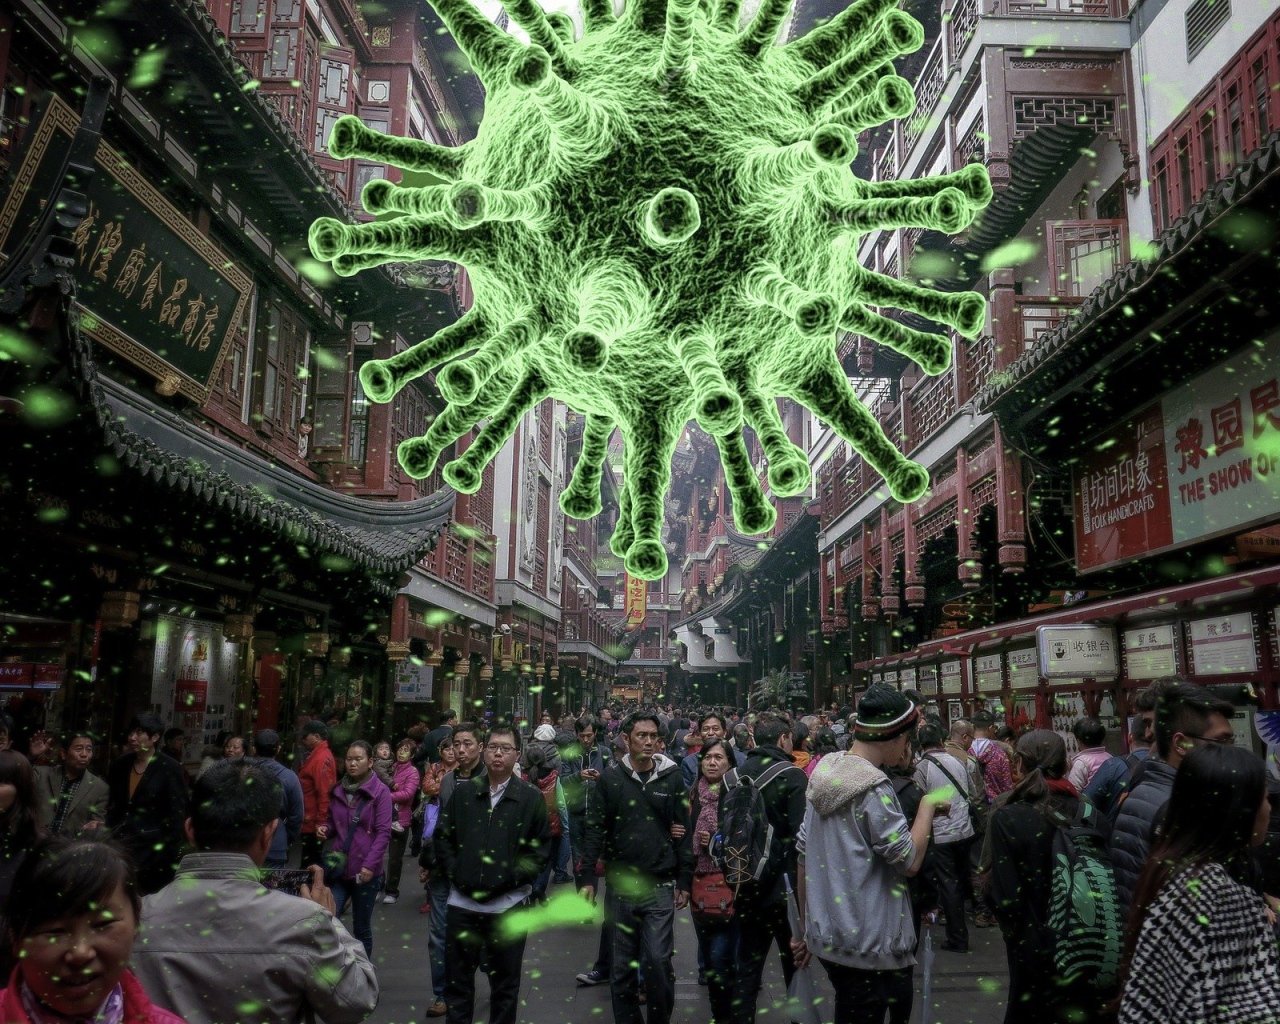 Вирус коронавируса навис над городом, Китай